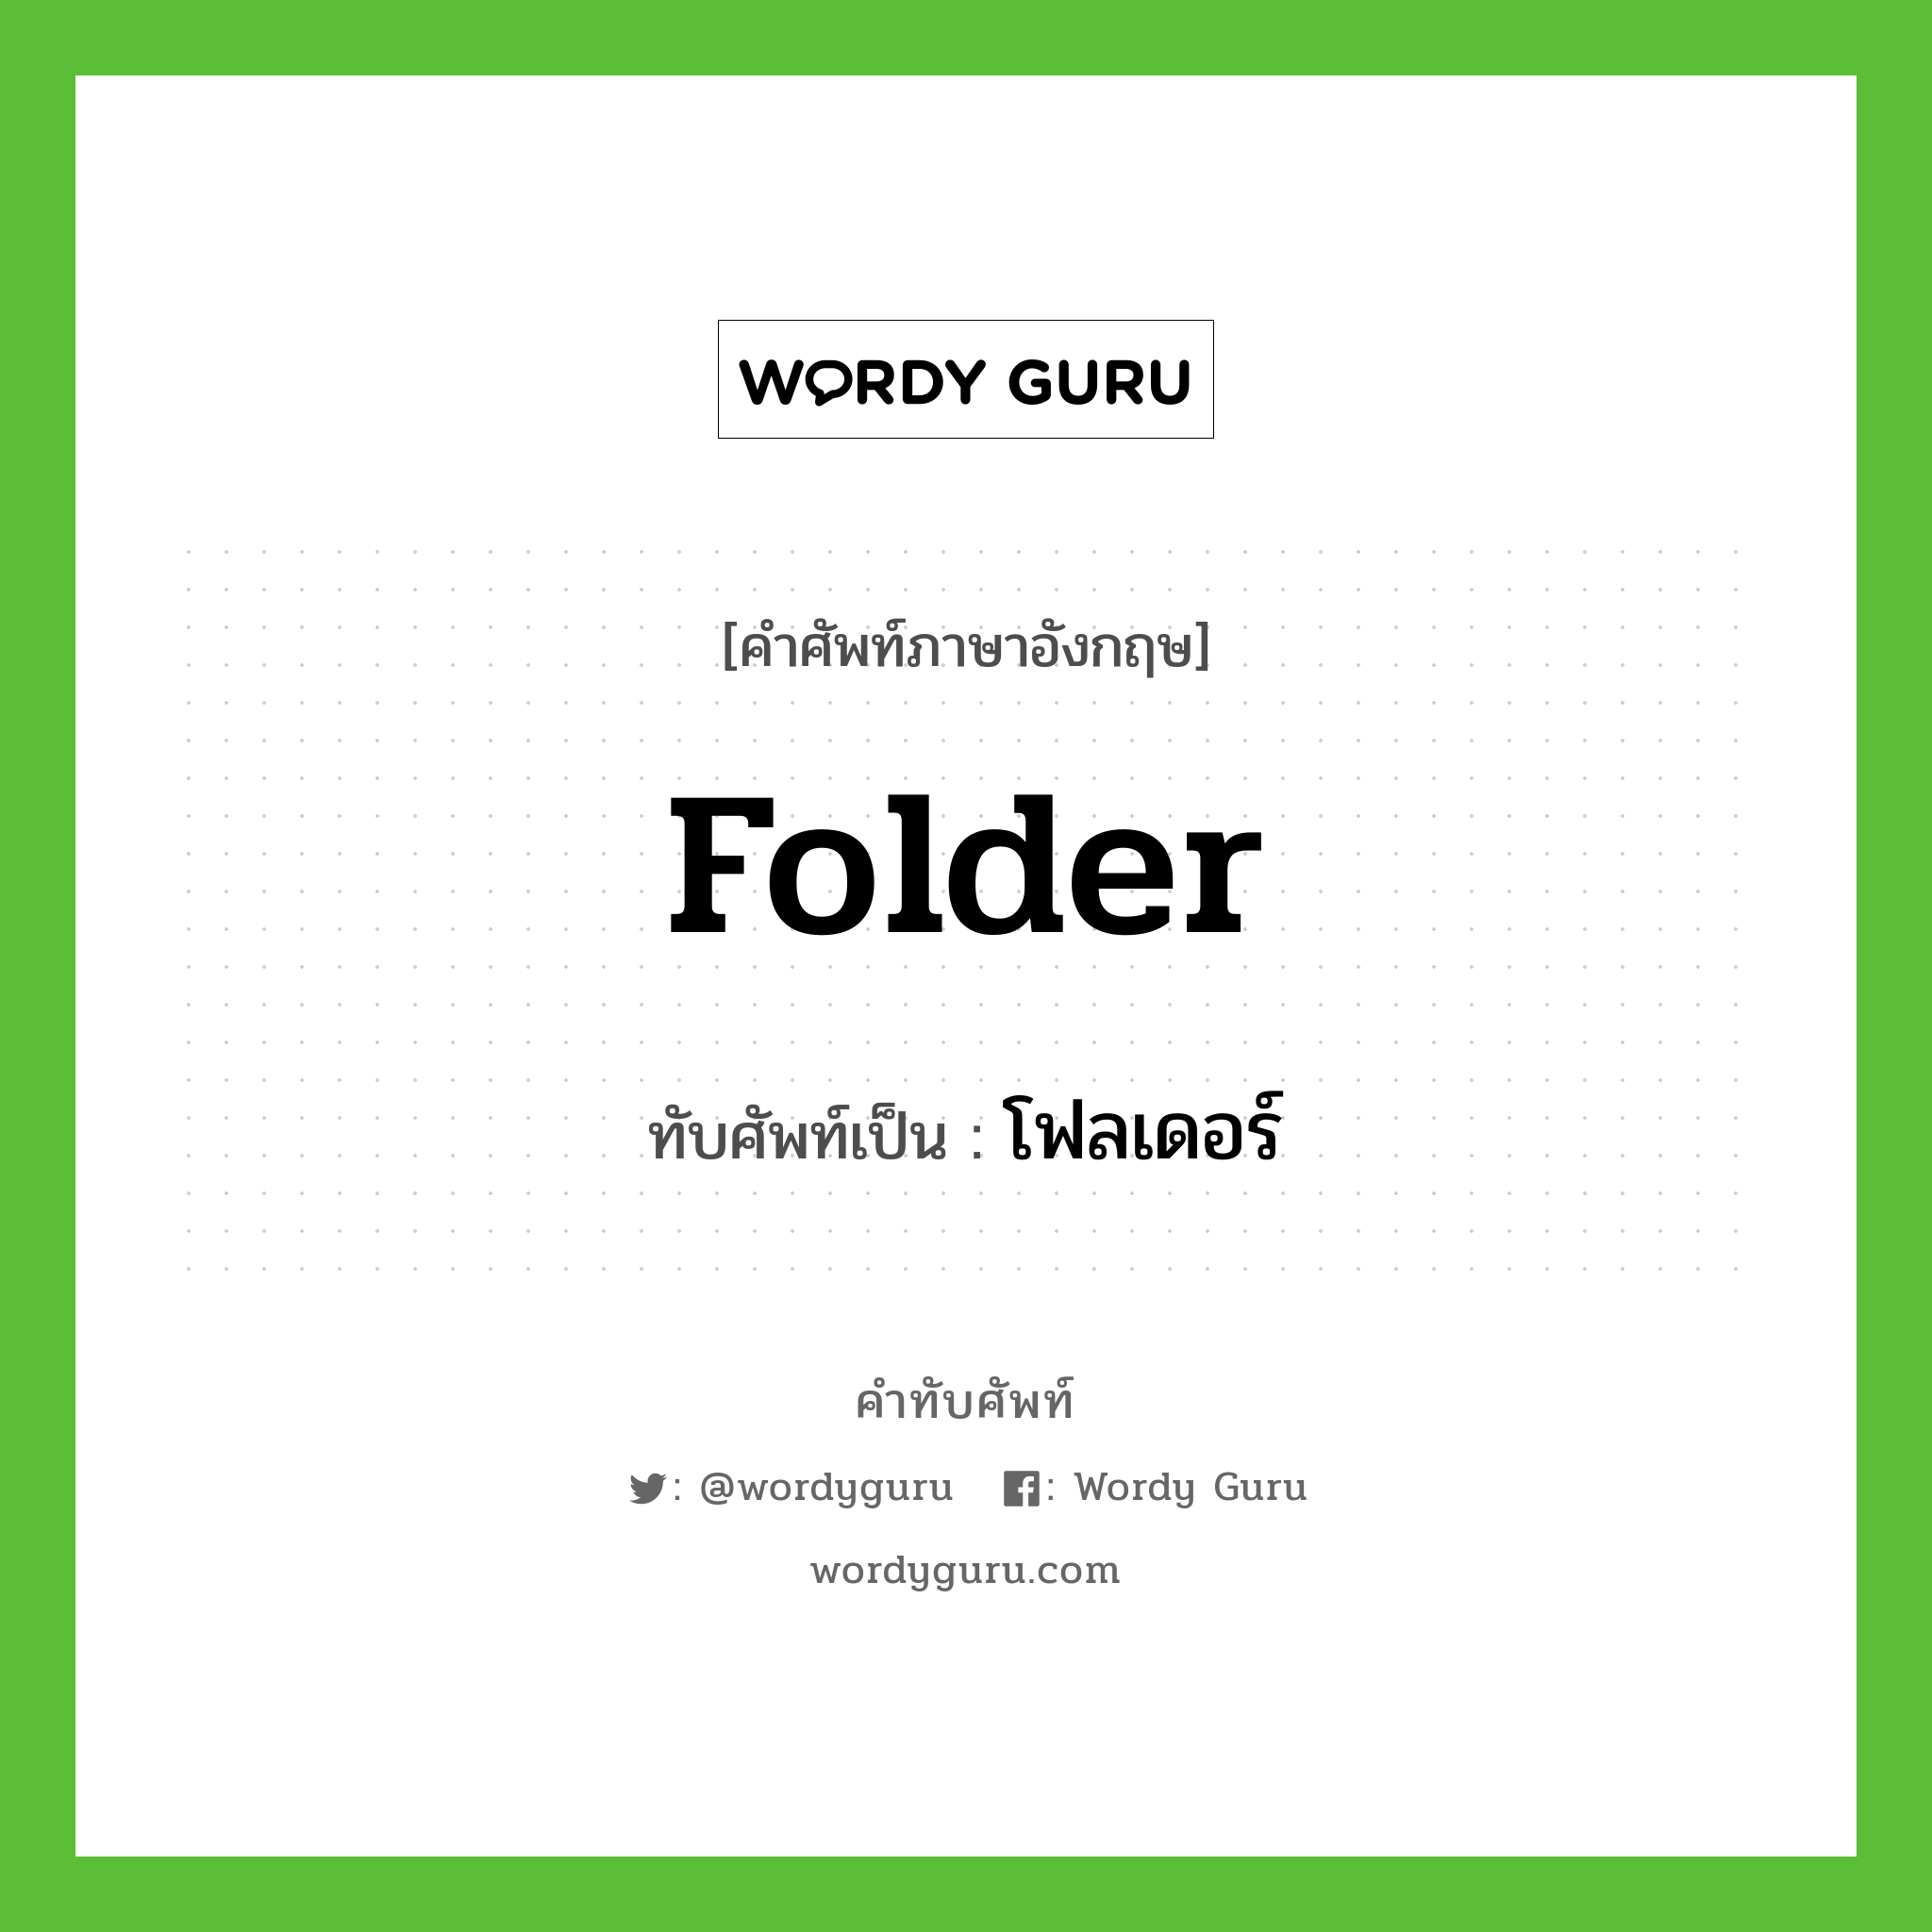 folder เขียนเป็นคำไทยว่าอะไร?, คำศัพท์ภาษาอังกฤษ folder ทับศัพท์เป็น โฟลเดอร์